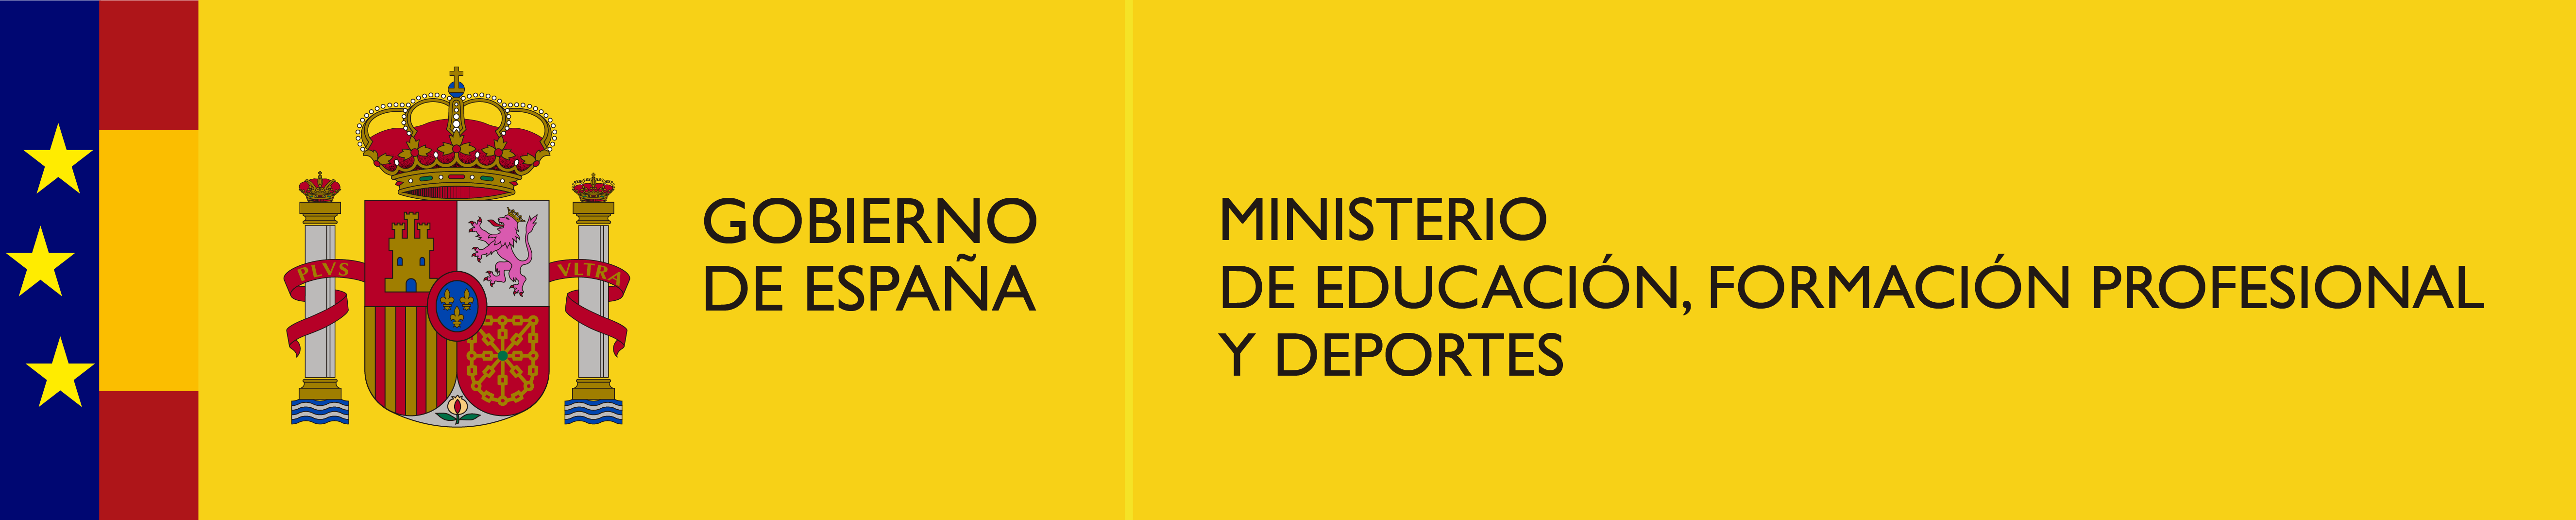 Nuevo logo Ministerio Educación